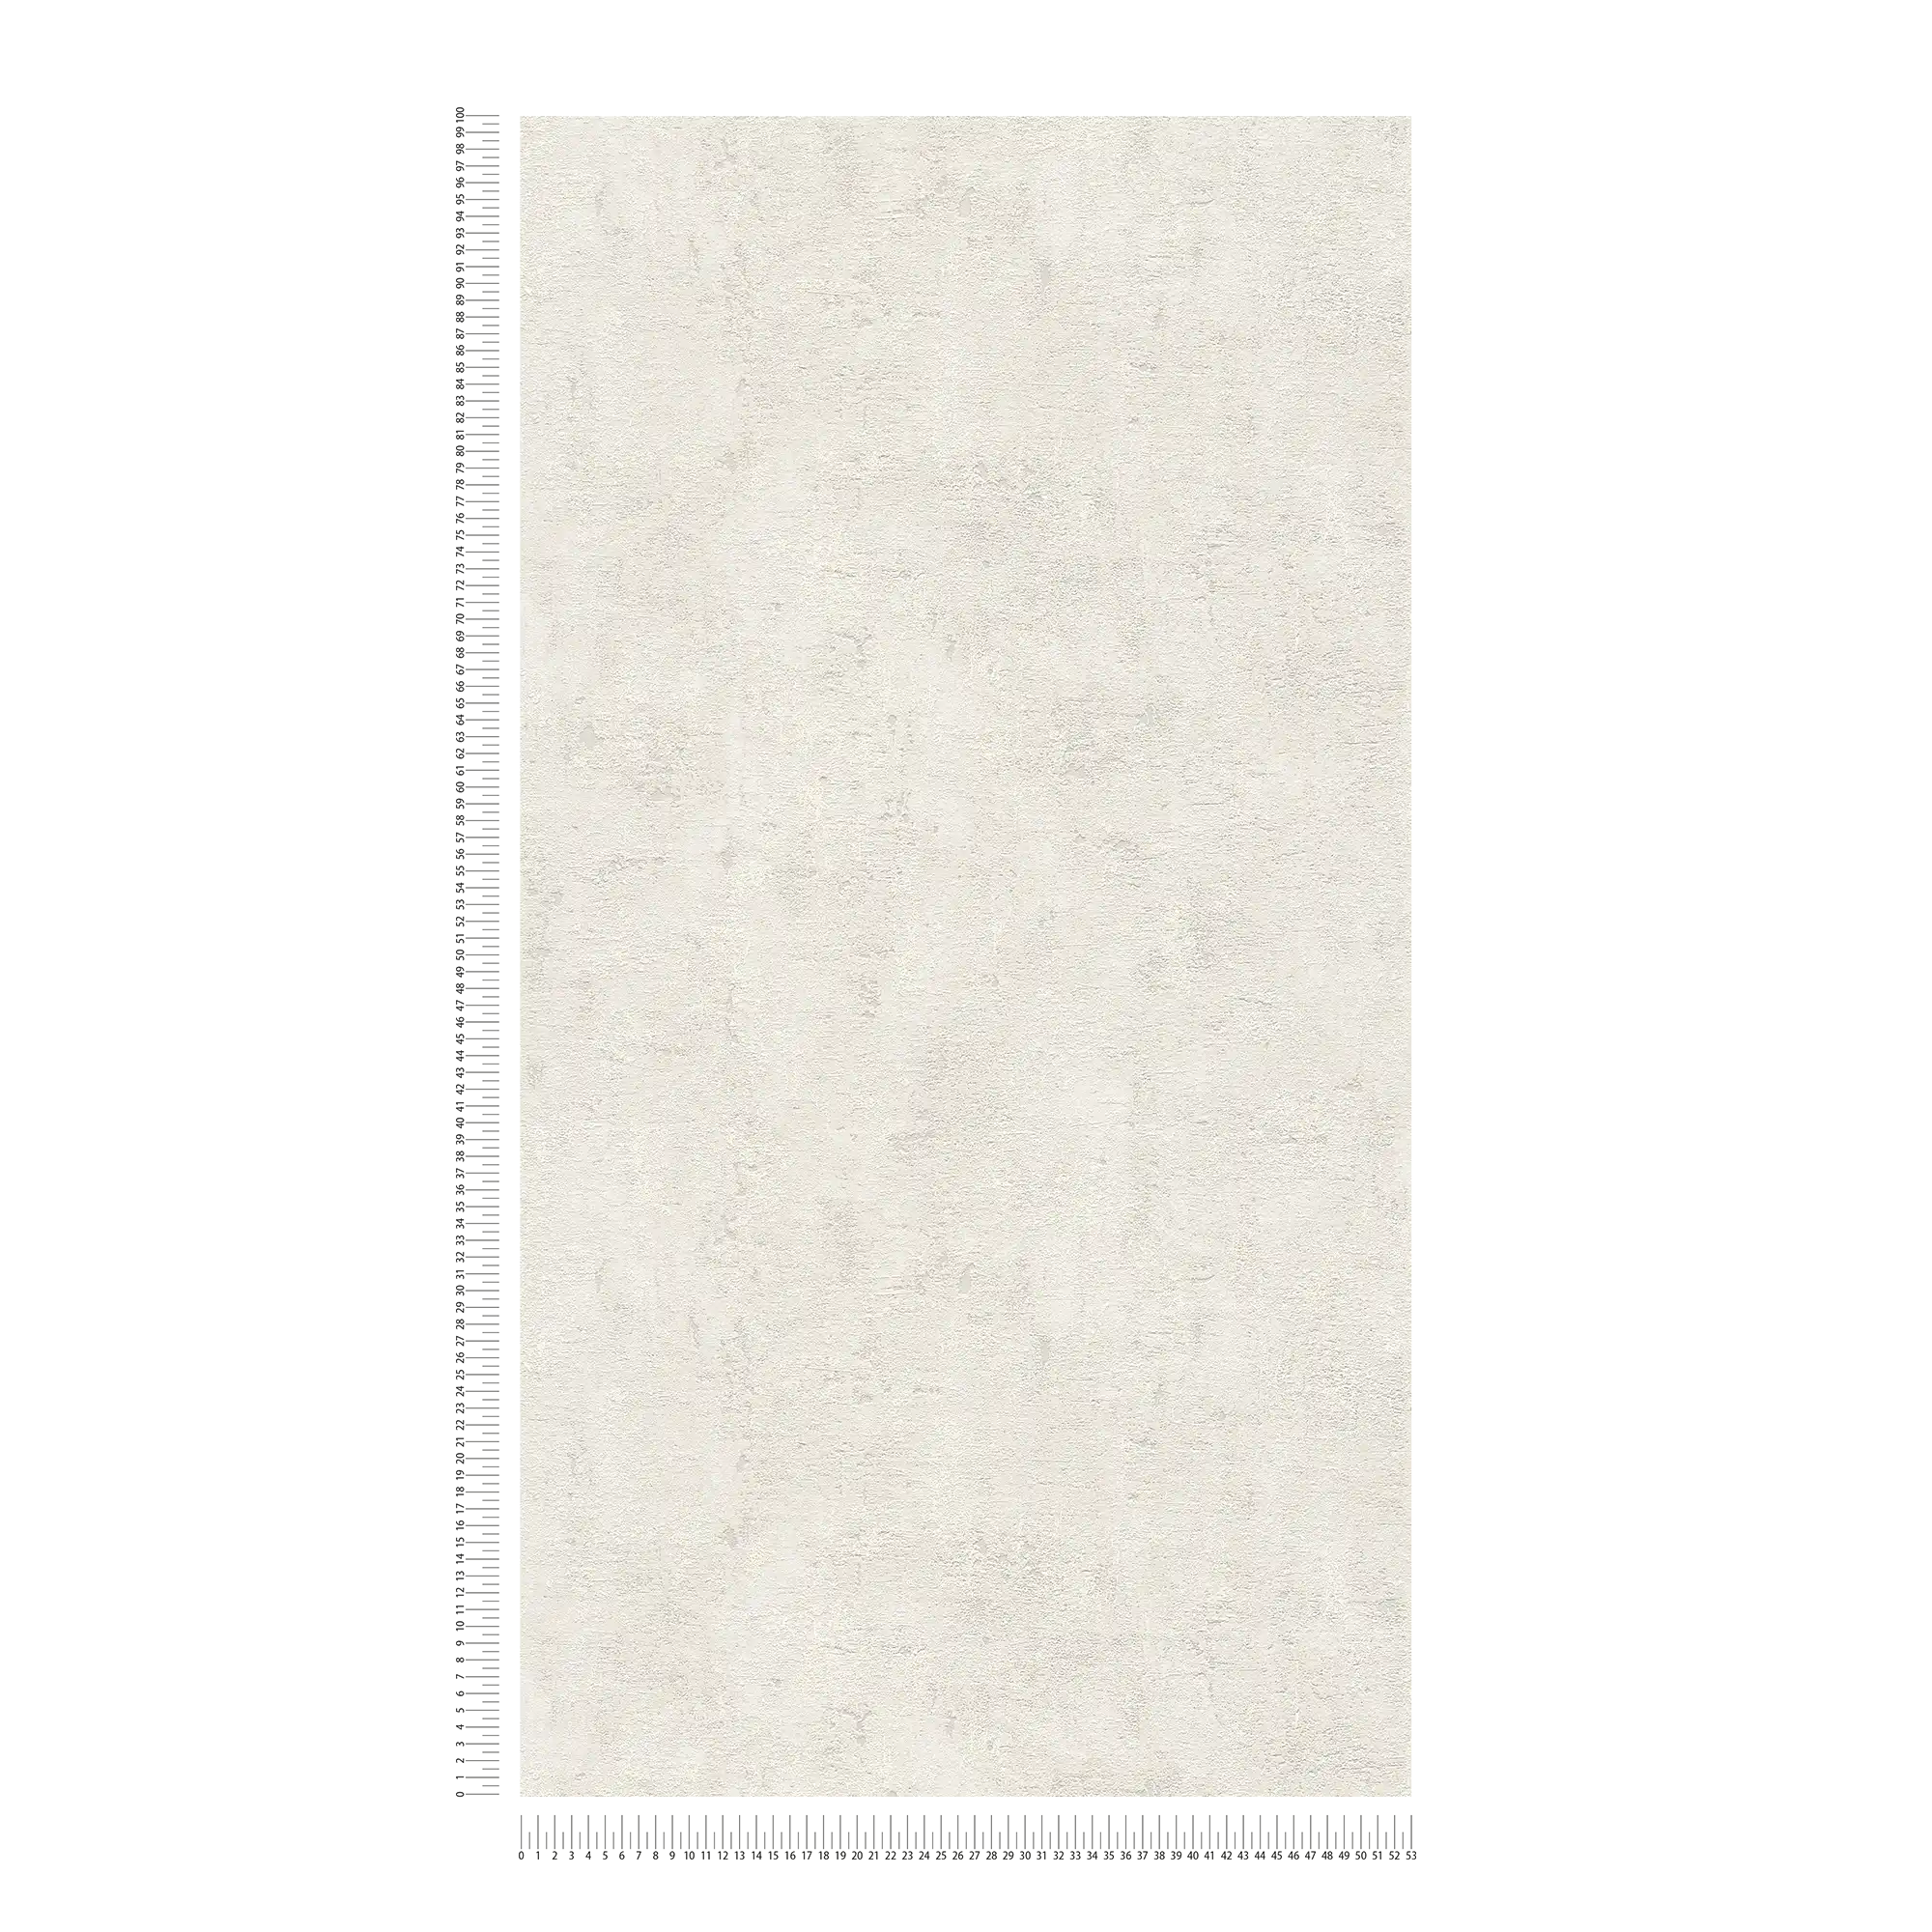             Papel pintado de aspecto usado con aspecto de yeso en estilo vintage - gris
        